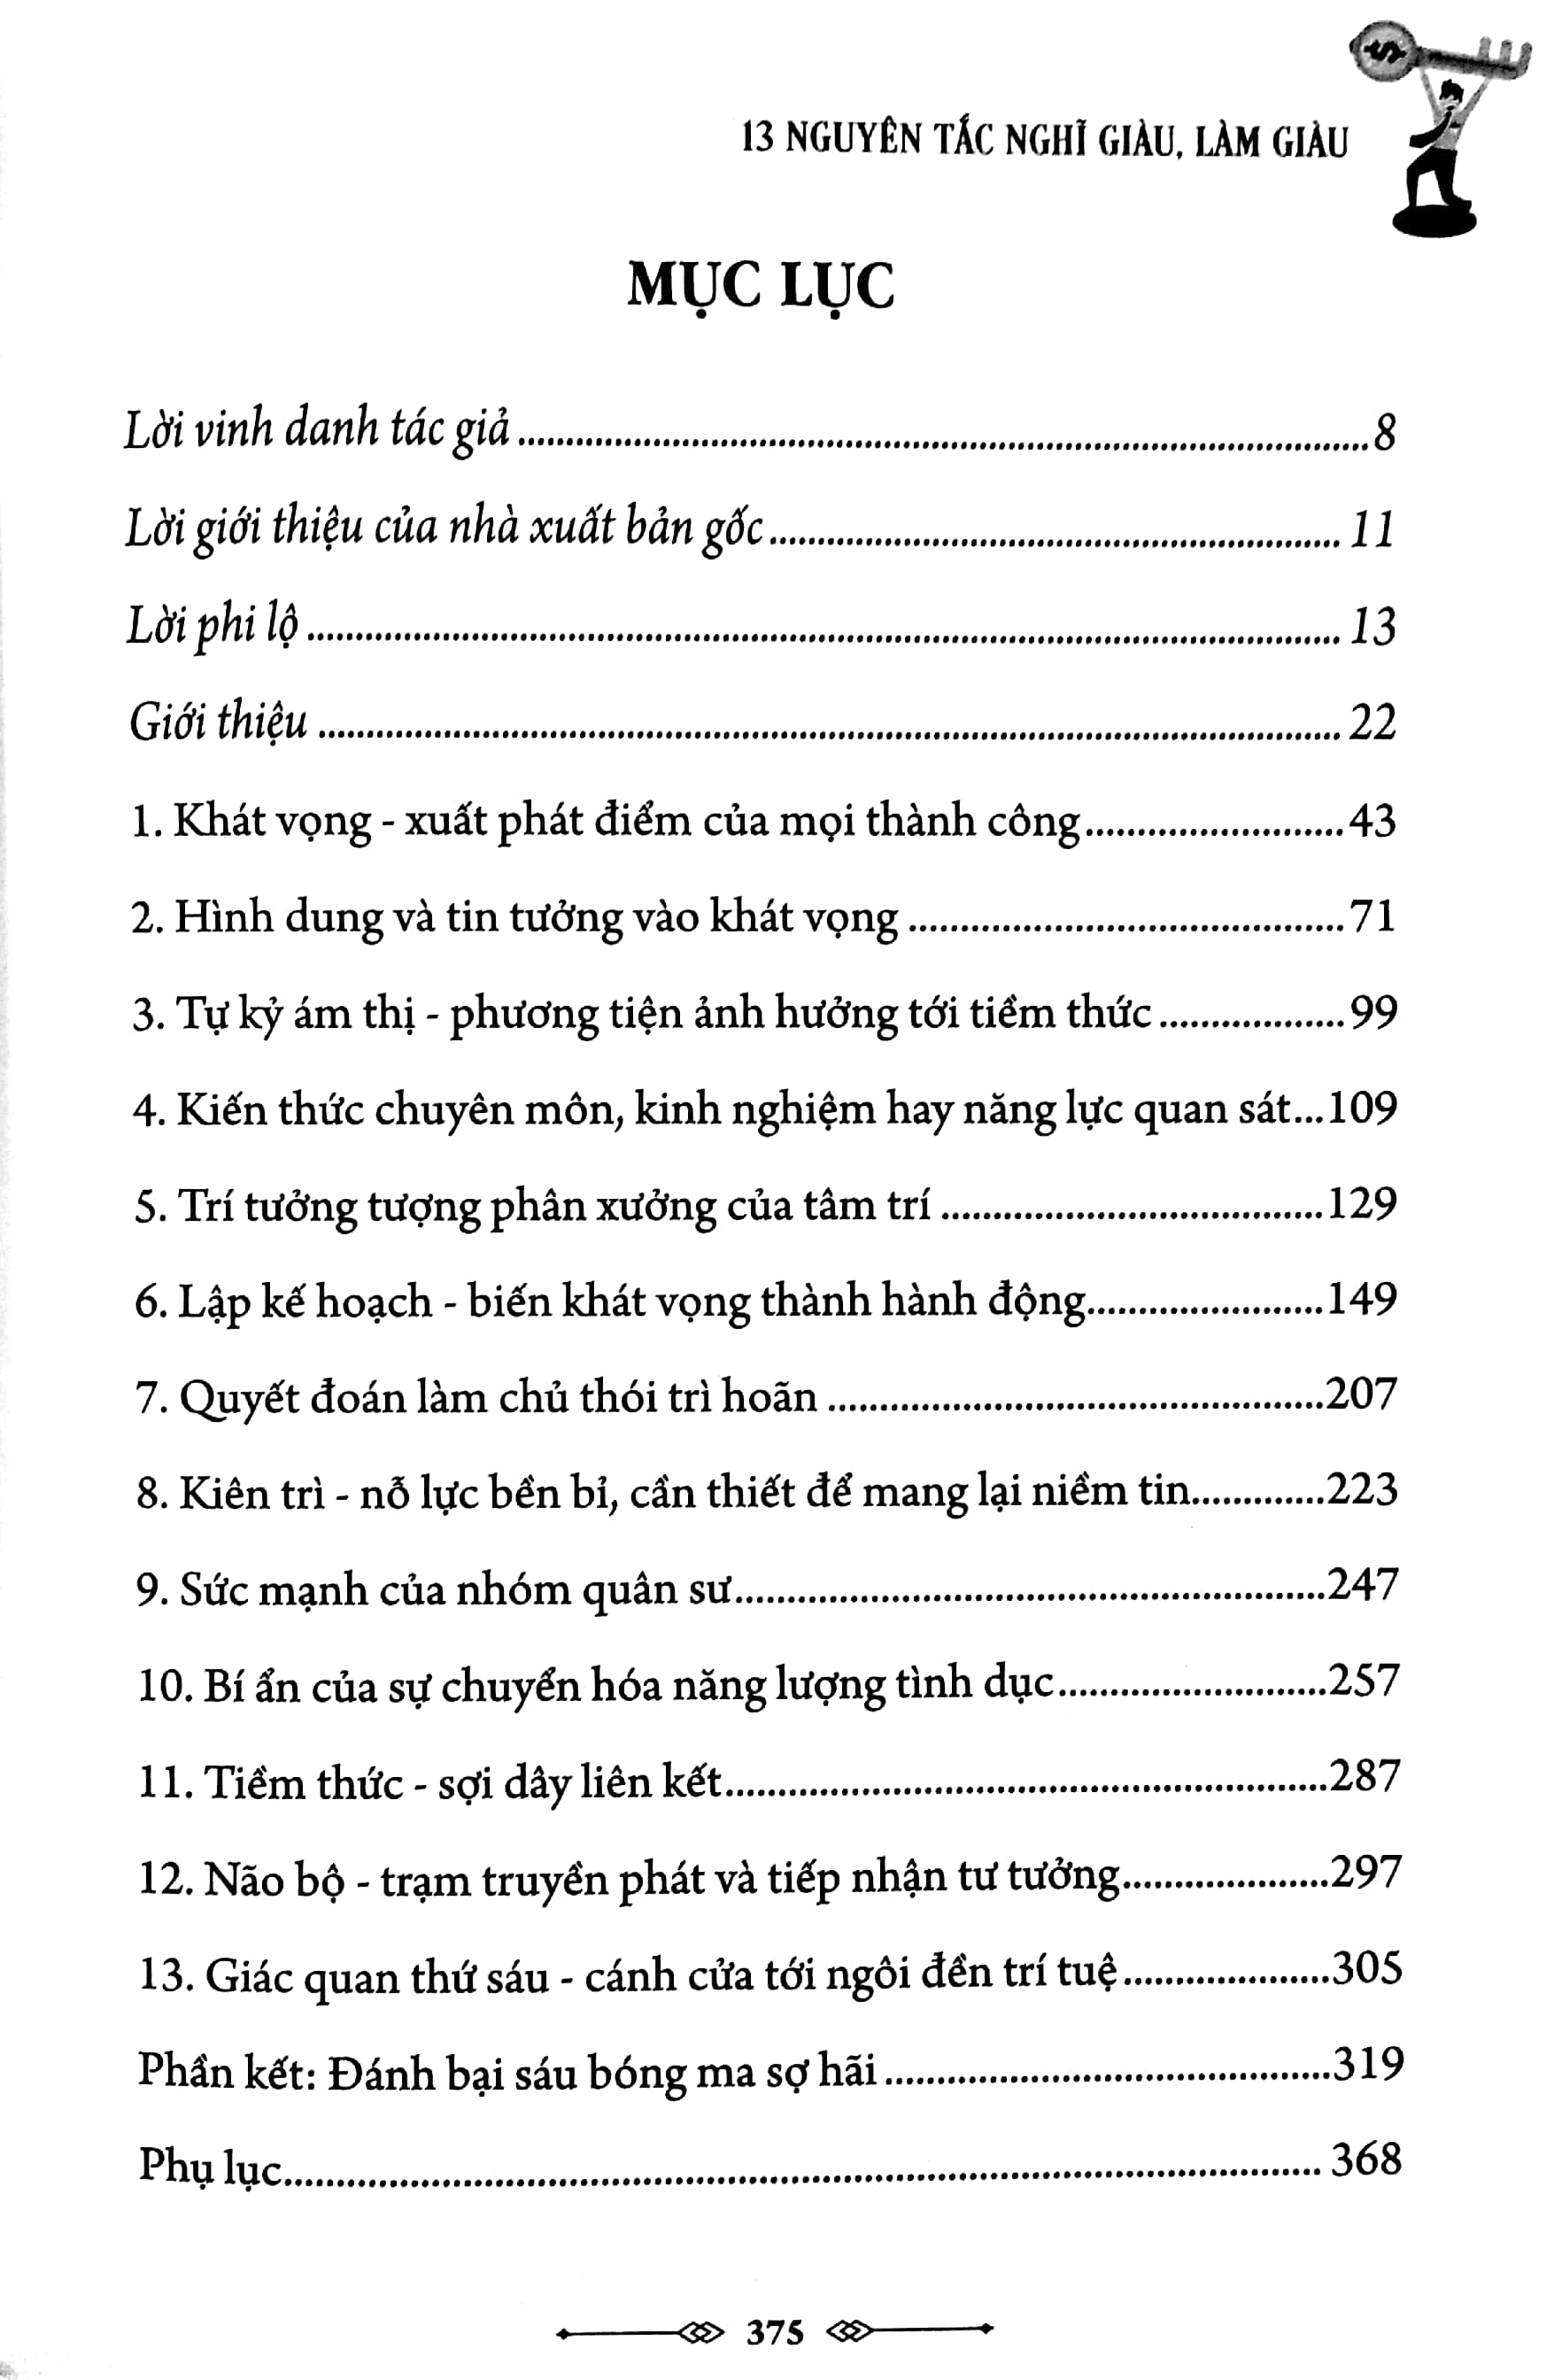 Think And Grow Rich - 13 Nguyên Tắc Nghĩ Giàu, Làm Giàu PDF